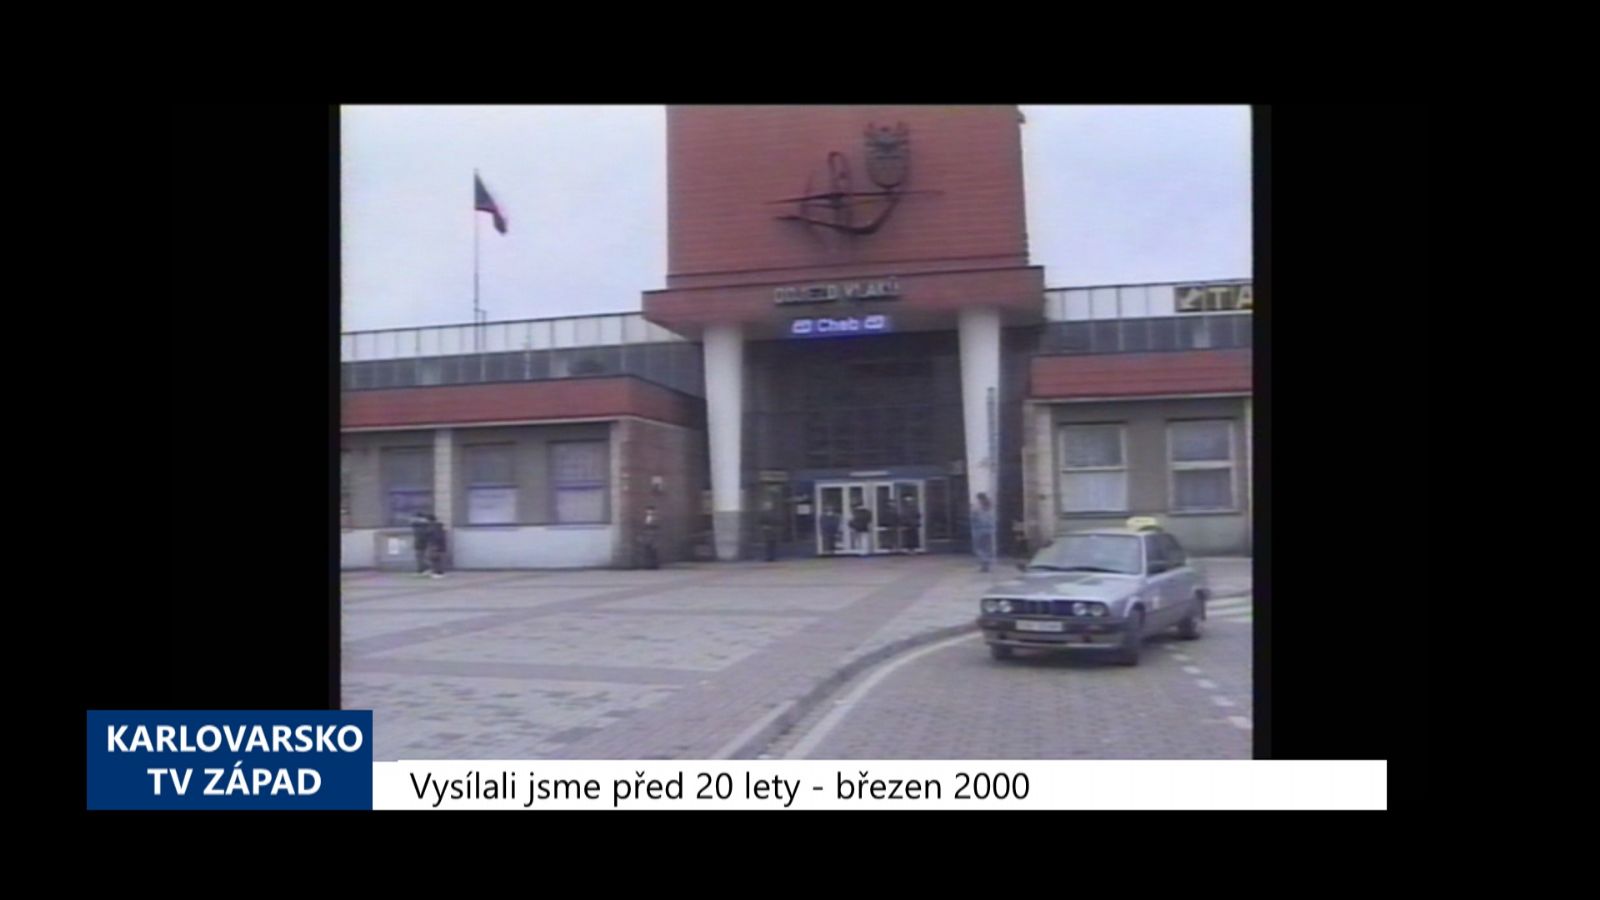 2000 – Cheb: Mladého muže zbili do bezvědomí a oloupili (TV Západ)